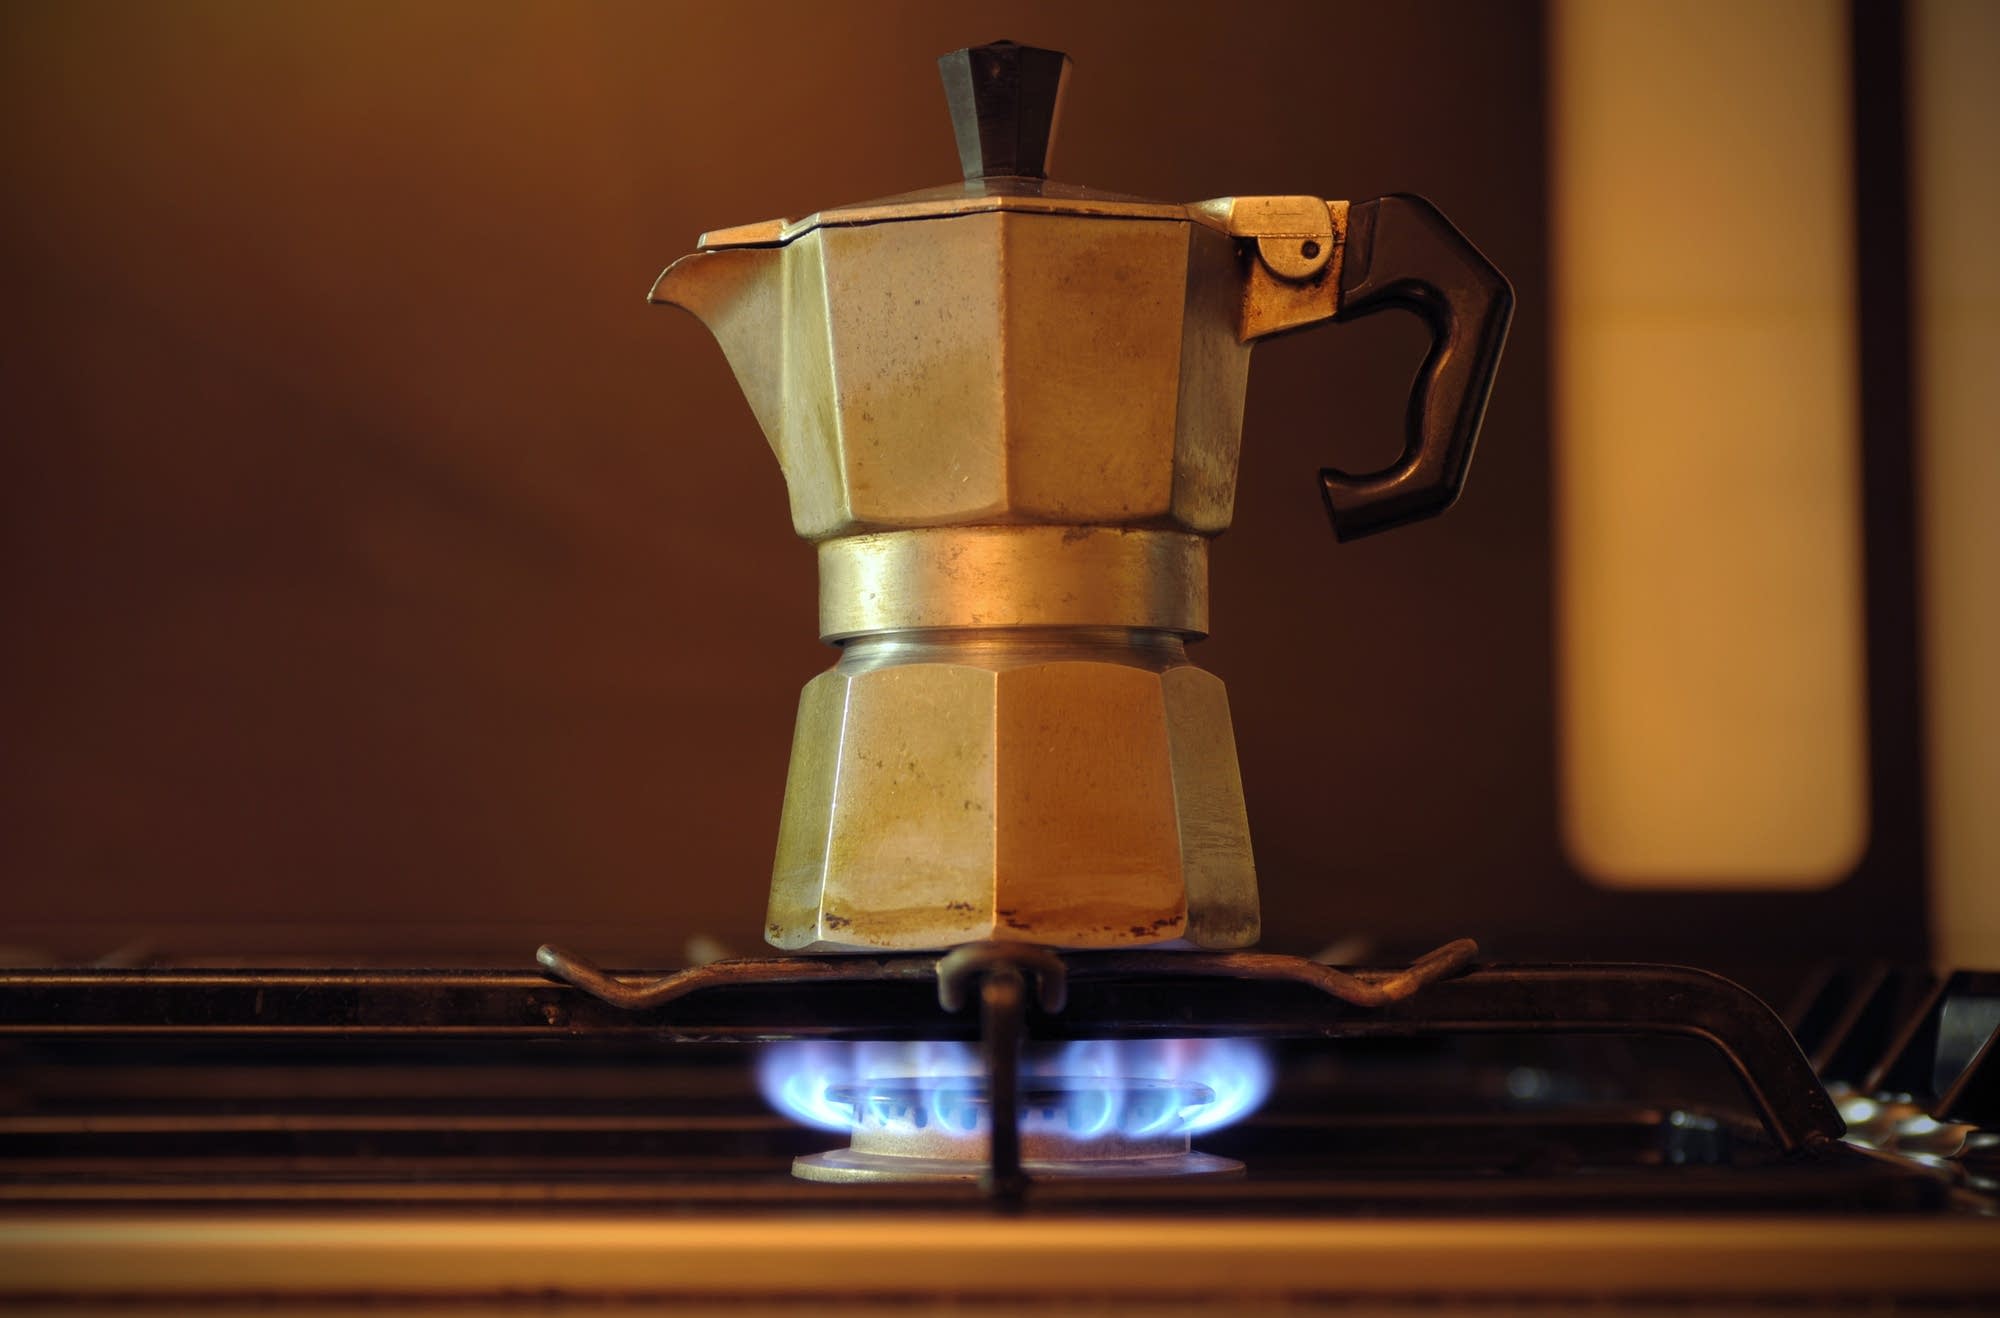 Nhận biết cà phê đã chín với cách pha cà phê bằng bình Moka Pot